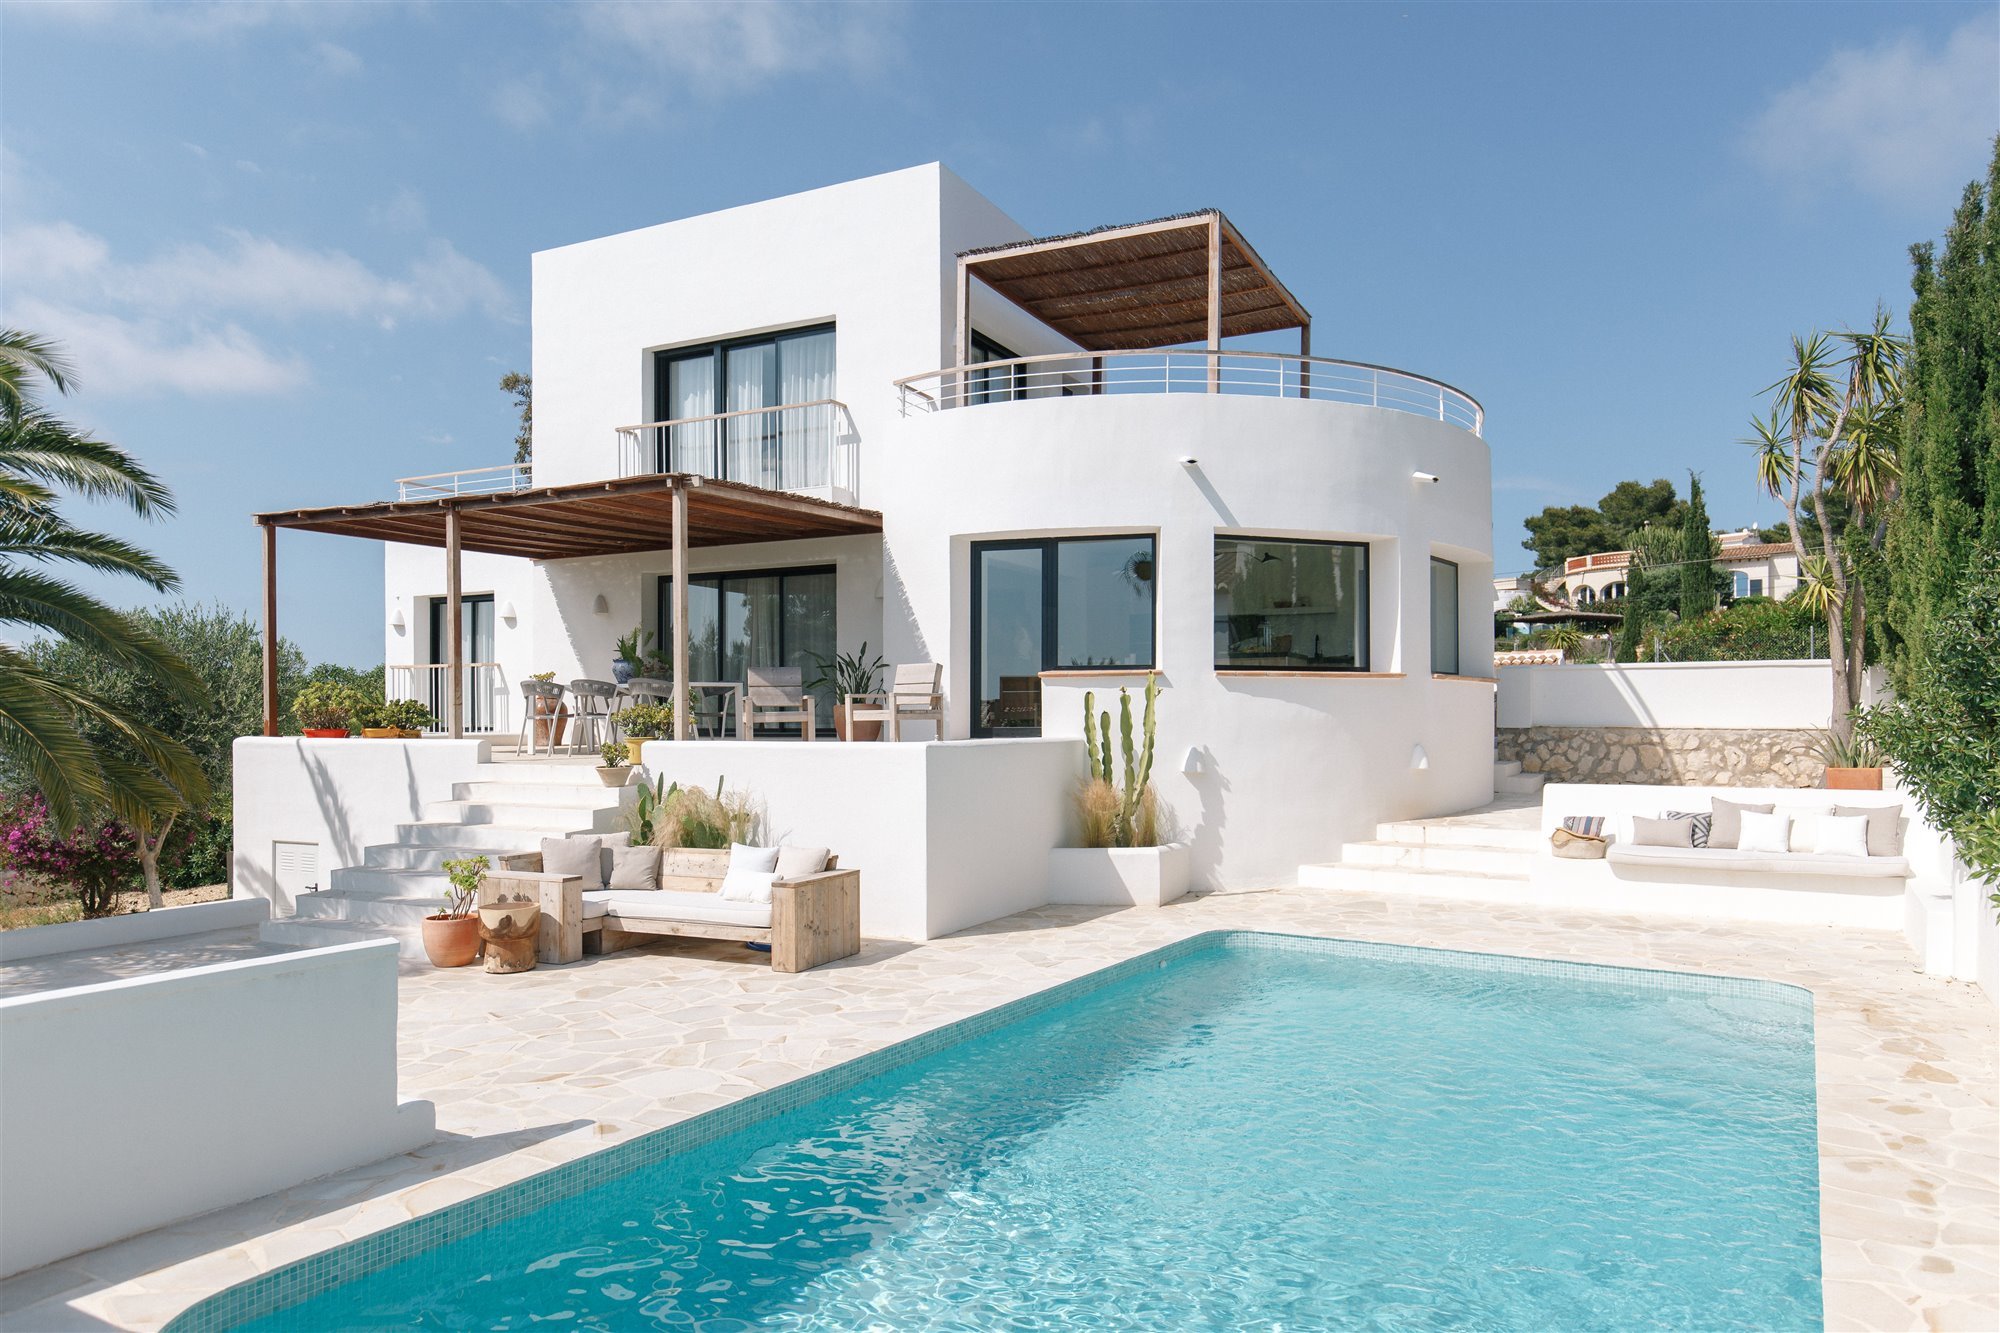 Casa moderna mediterránea con piscina 